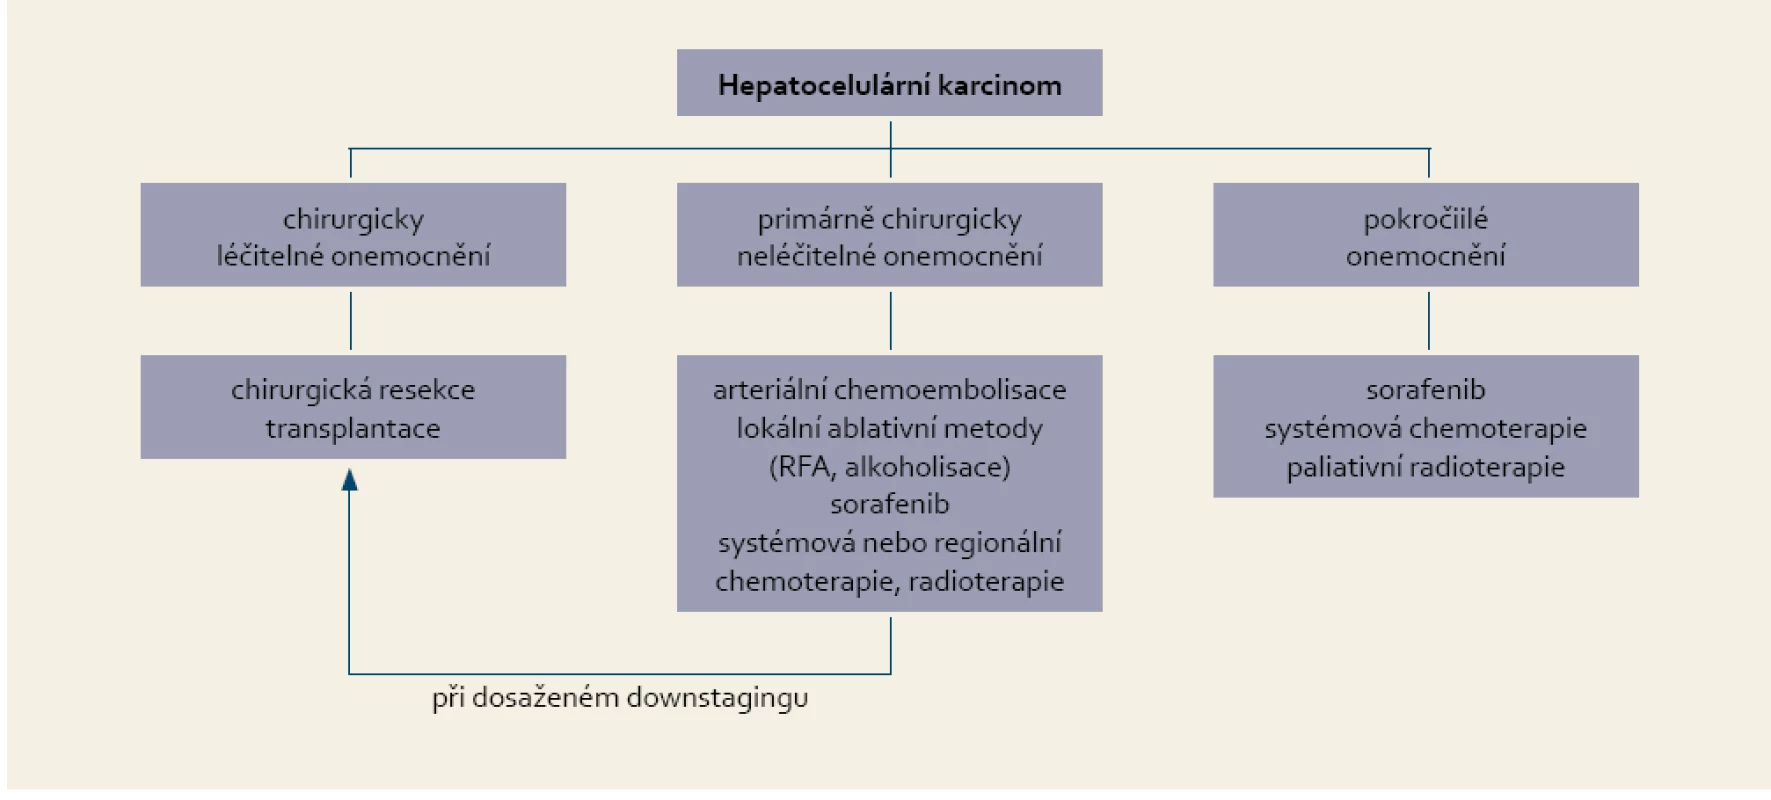 Indikace systémové léčby hepatocelulárního karcinomu.
Tab. 2. Suggestions for systemic treatment of hepatocellular carcinoma.